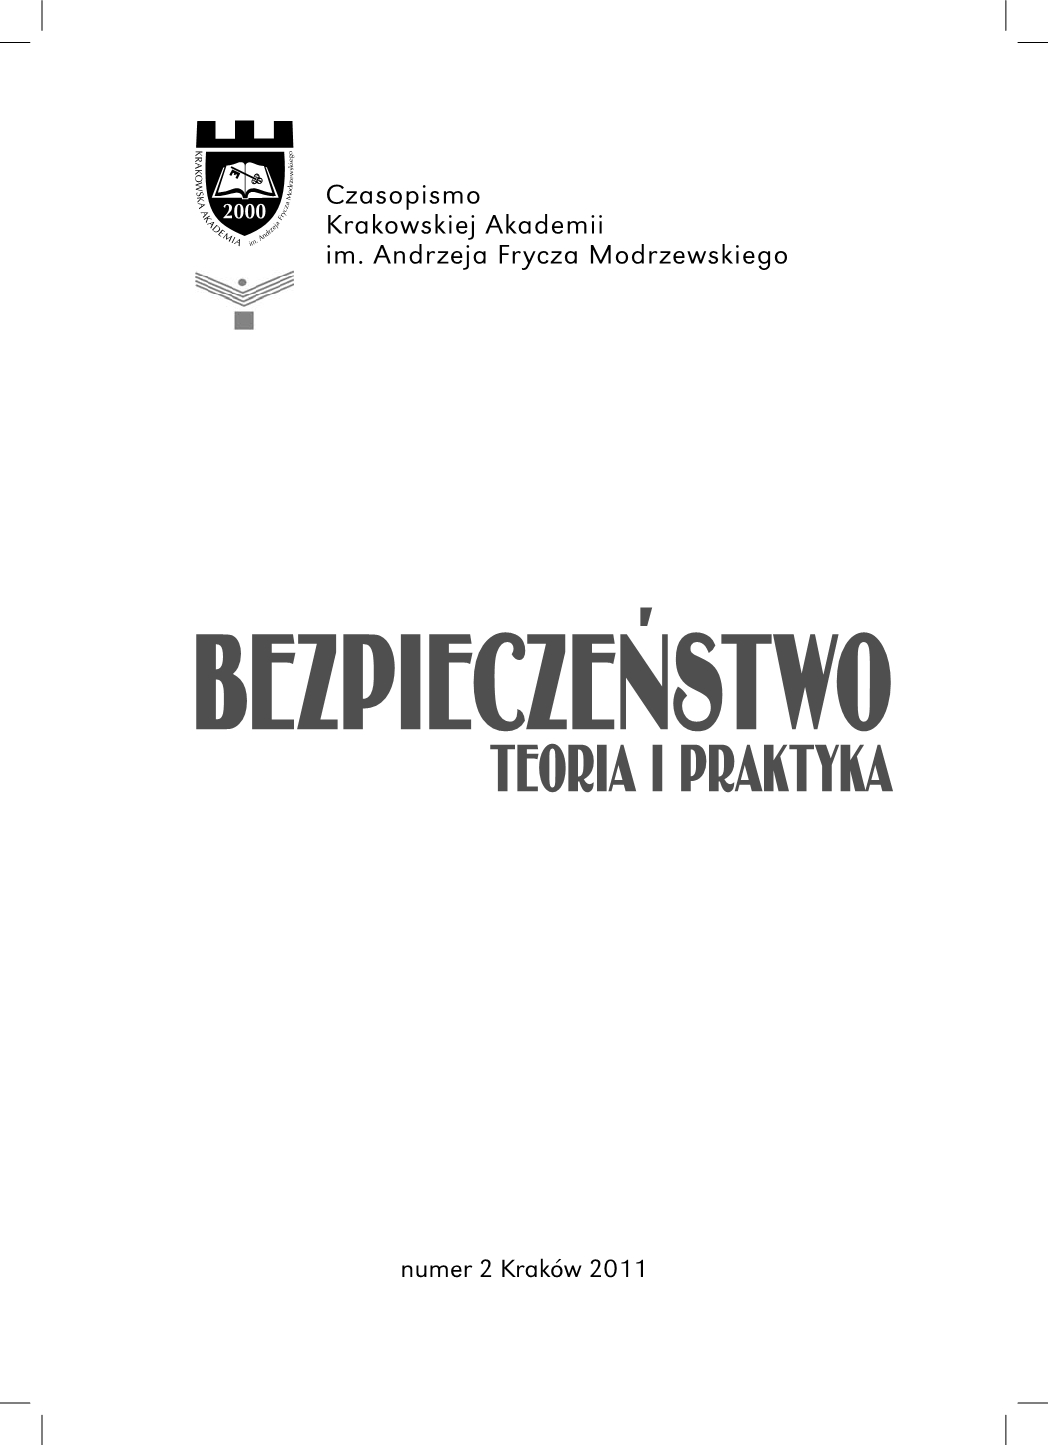 Ryszard Bełdzikowski, Kontrola skarbowa. Uprawnienia, struktura, skuteczność - book review Cover Image